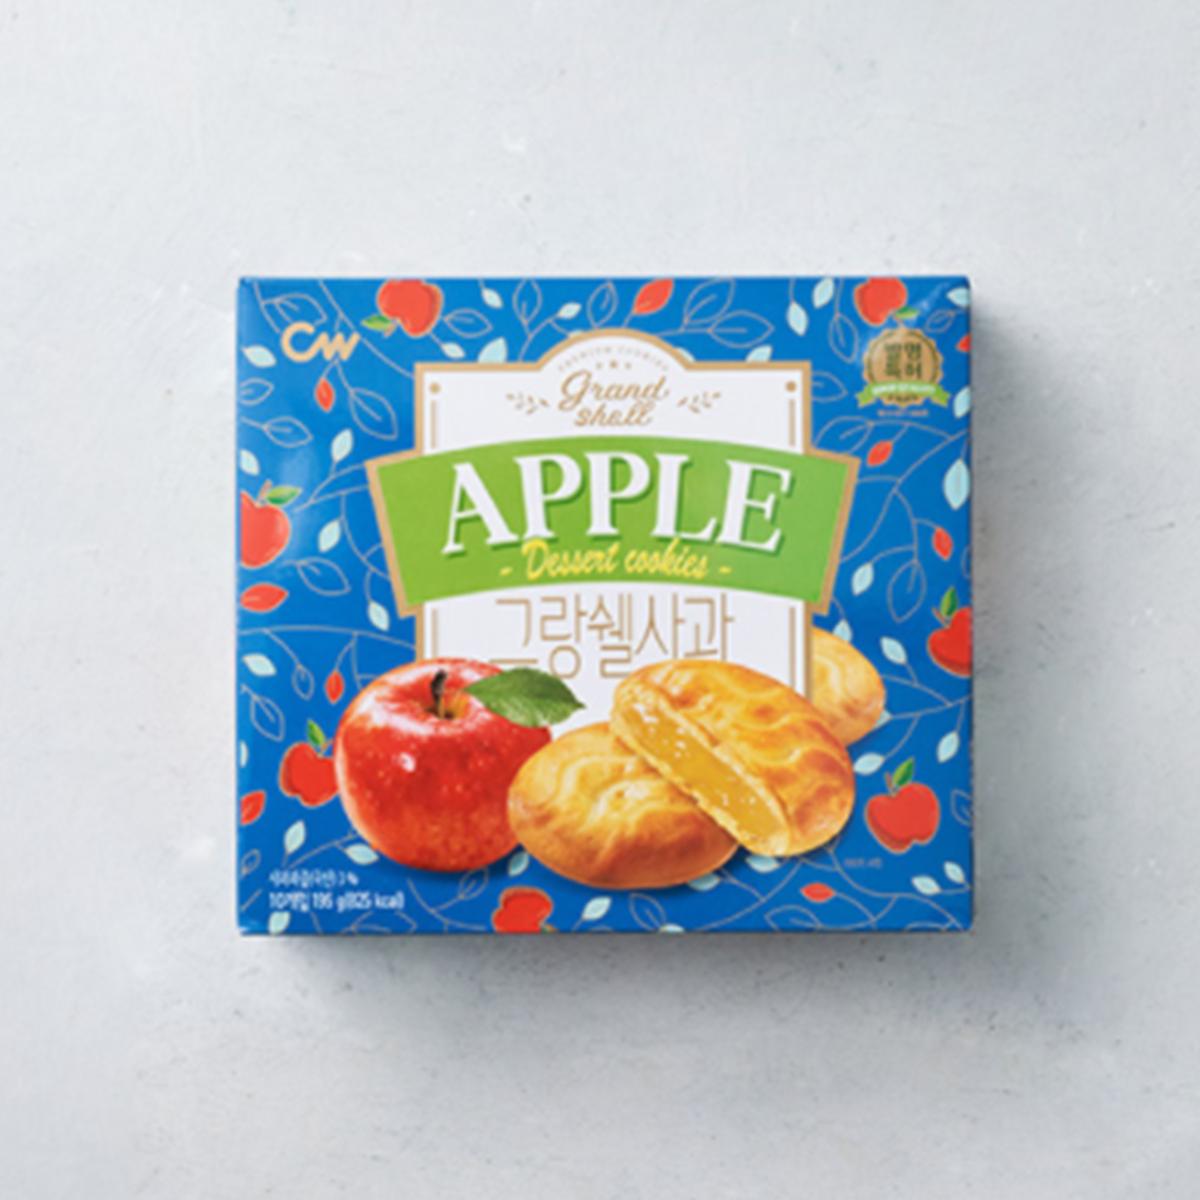 Grandshell Apple Dessert Cookies (10 packs)